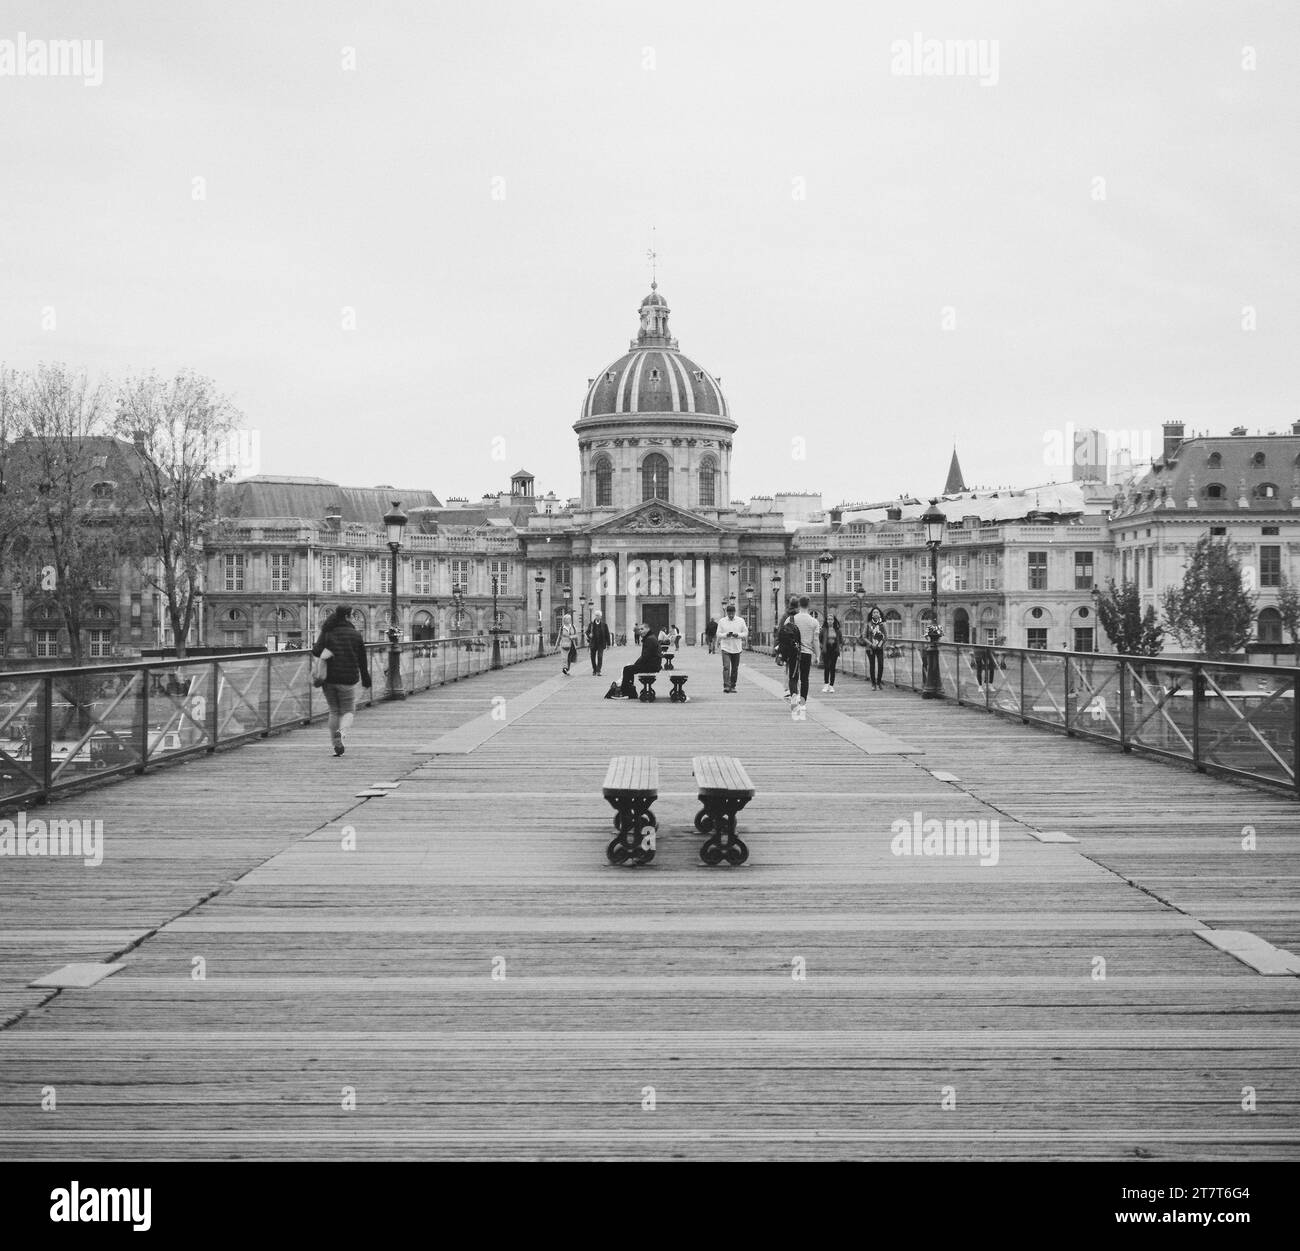 La vie urbaine en noir et blanc à Paris france Banque D'Images